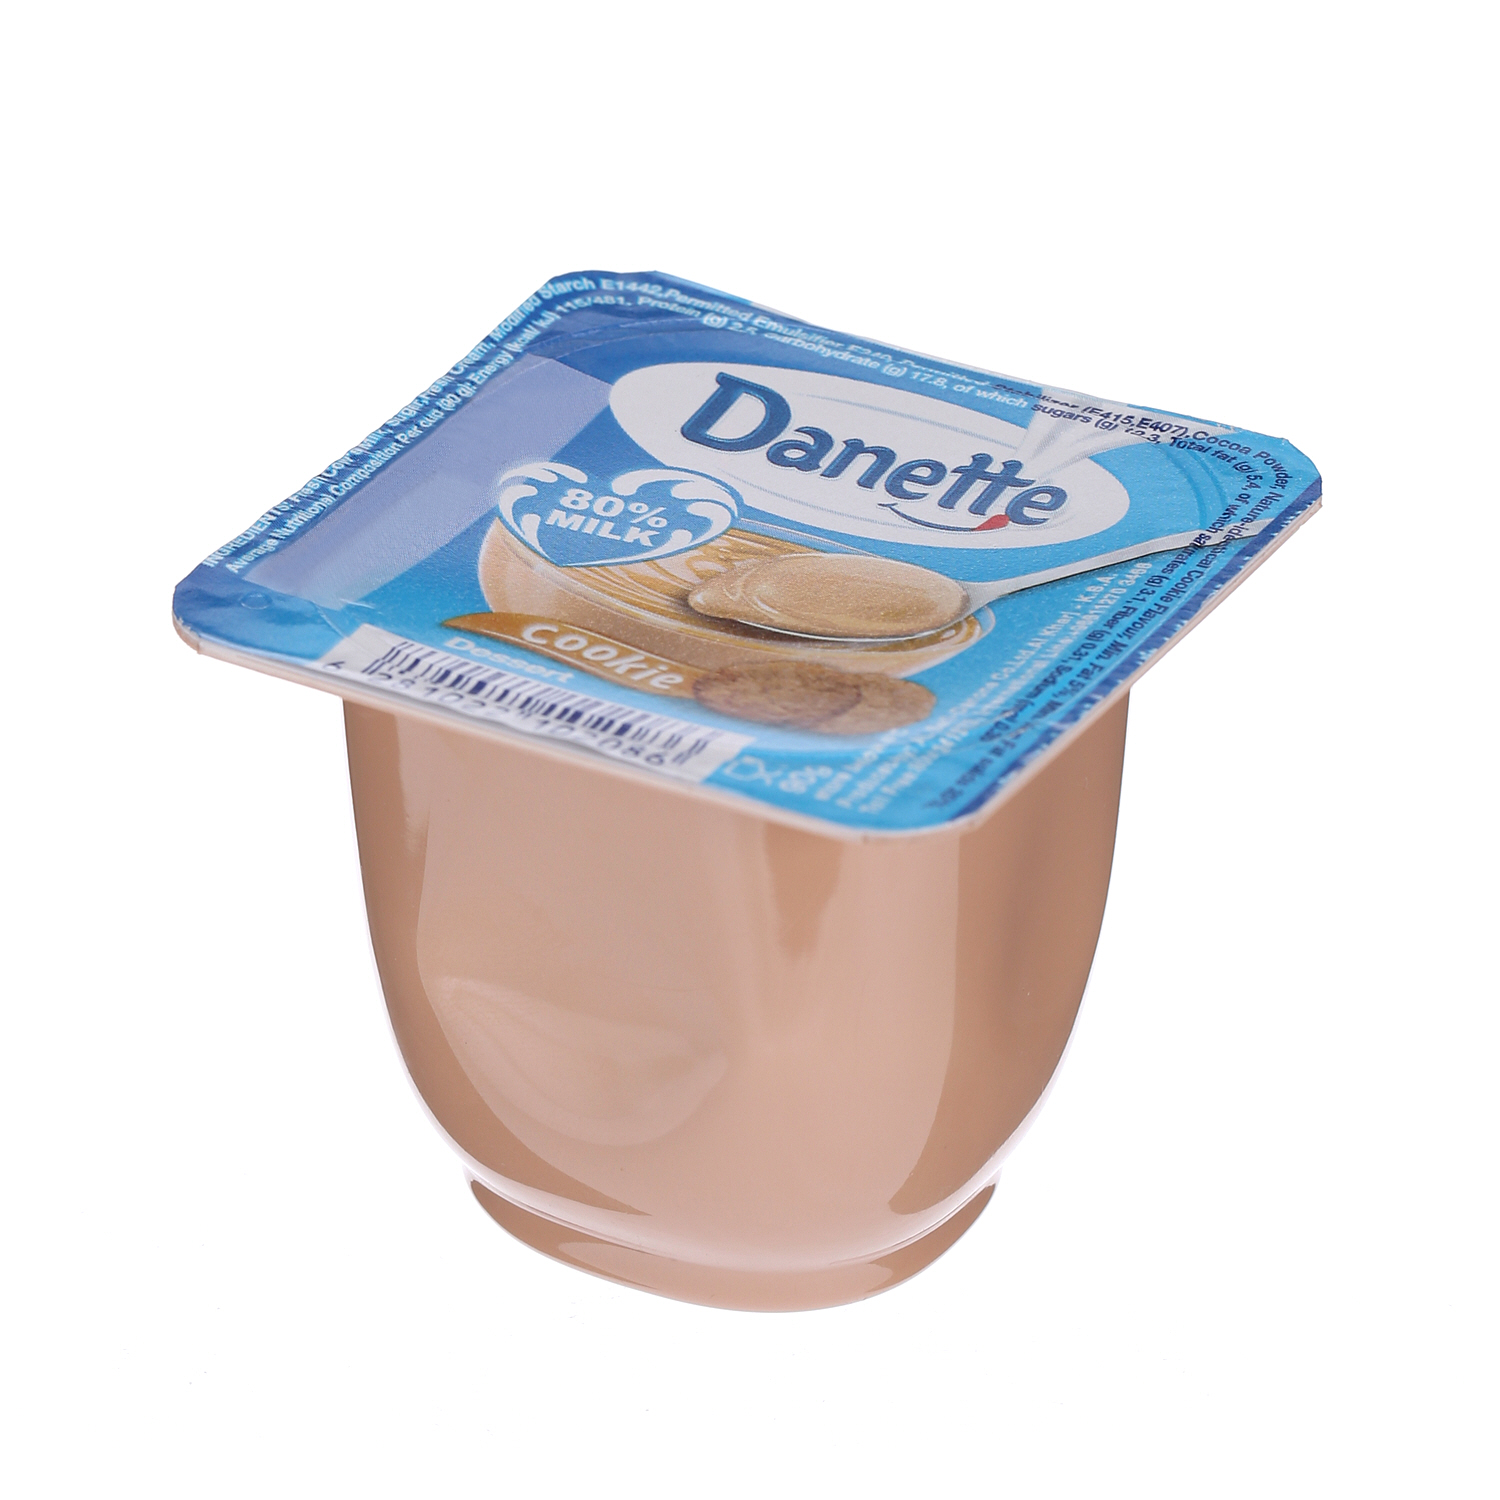 Al Safi Danone Dannete Cream Dessert Cookies 90gm